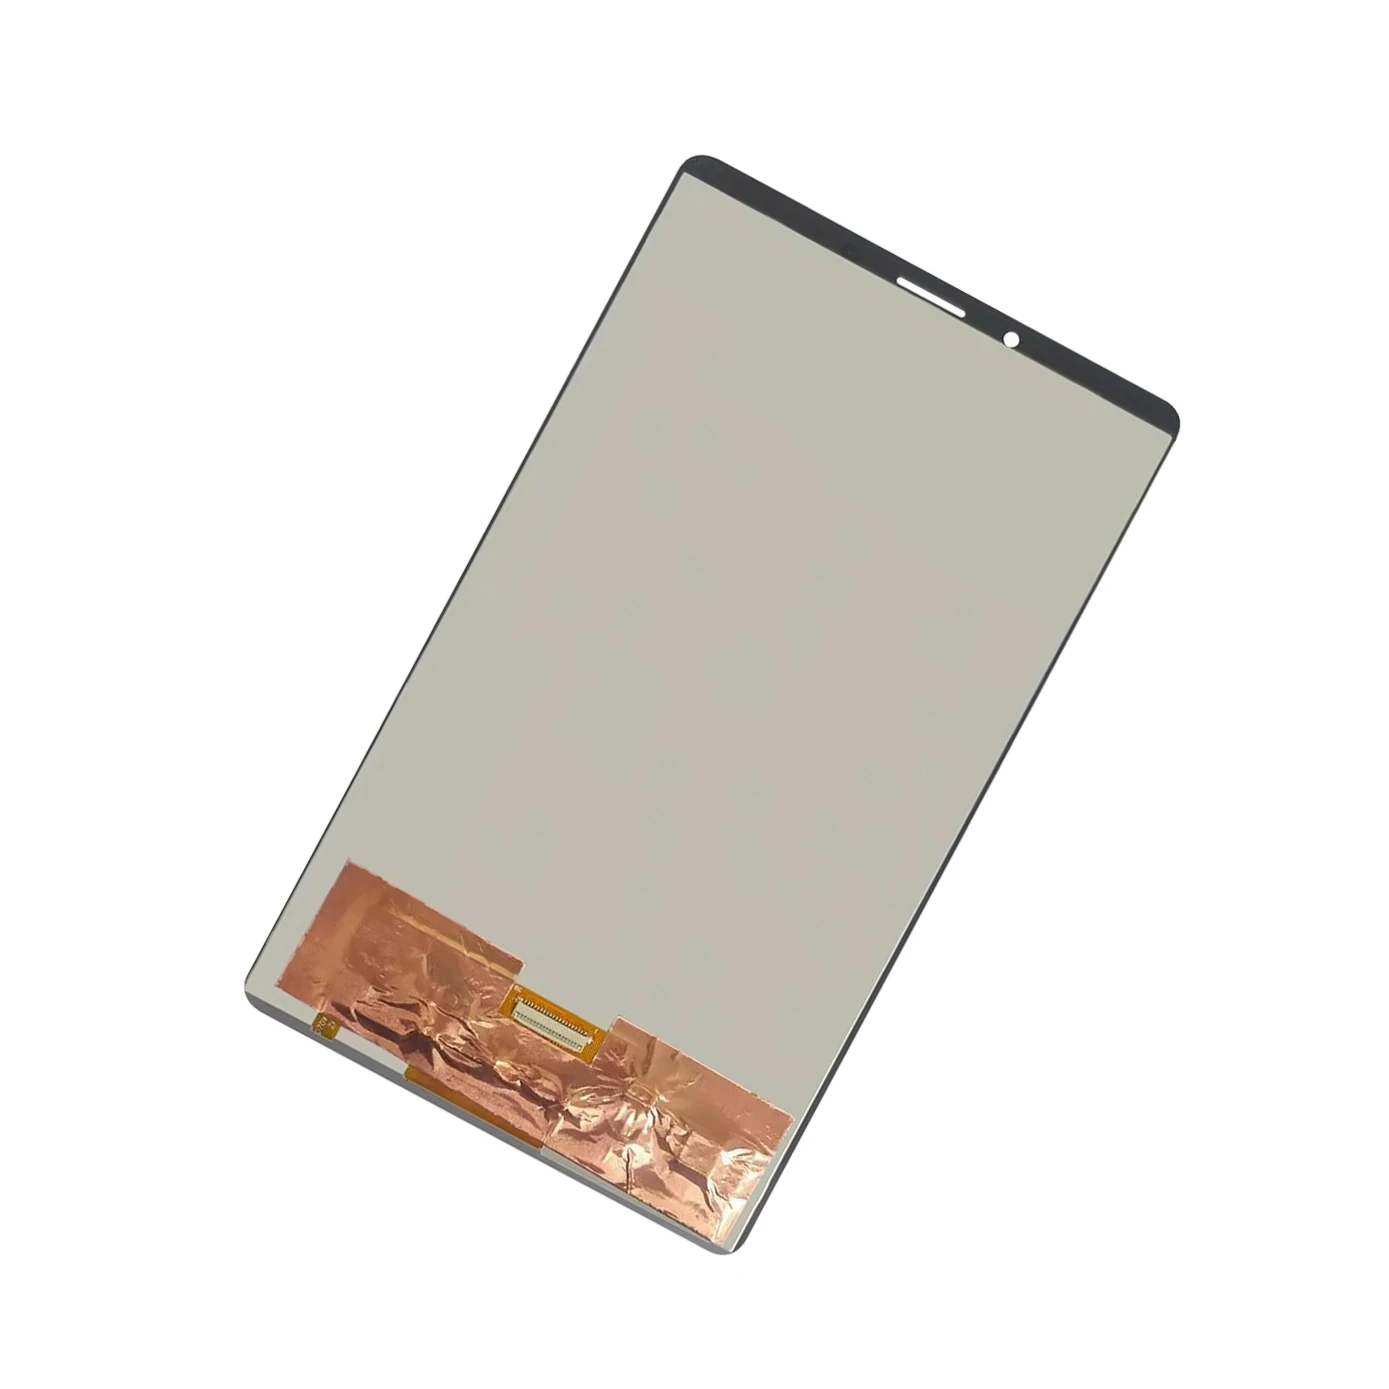 Оригинальный ЖК-дисплей для планшета Lenovo Tab M7 TB-7305 стандартный ЖК-дисплей с сенсорным экраном 3G 4G WIFI дигитайзер в сборе протестирован